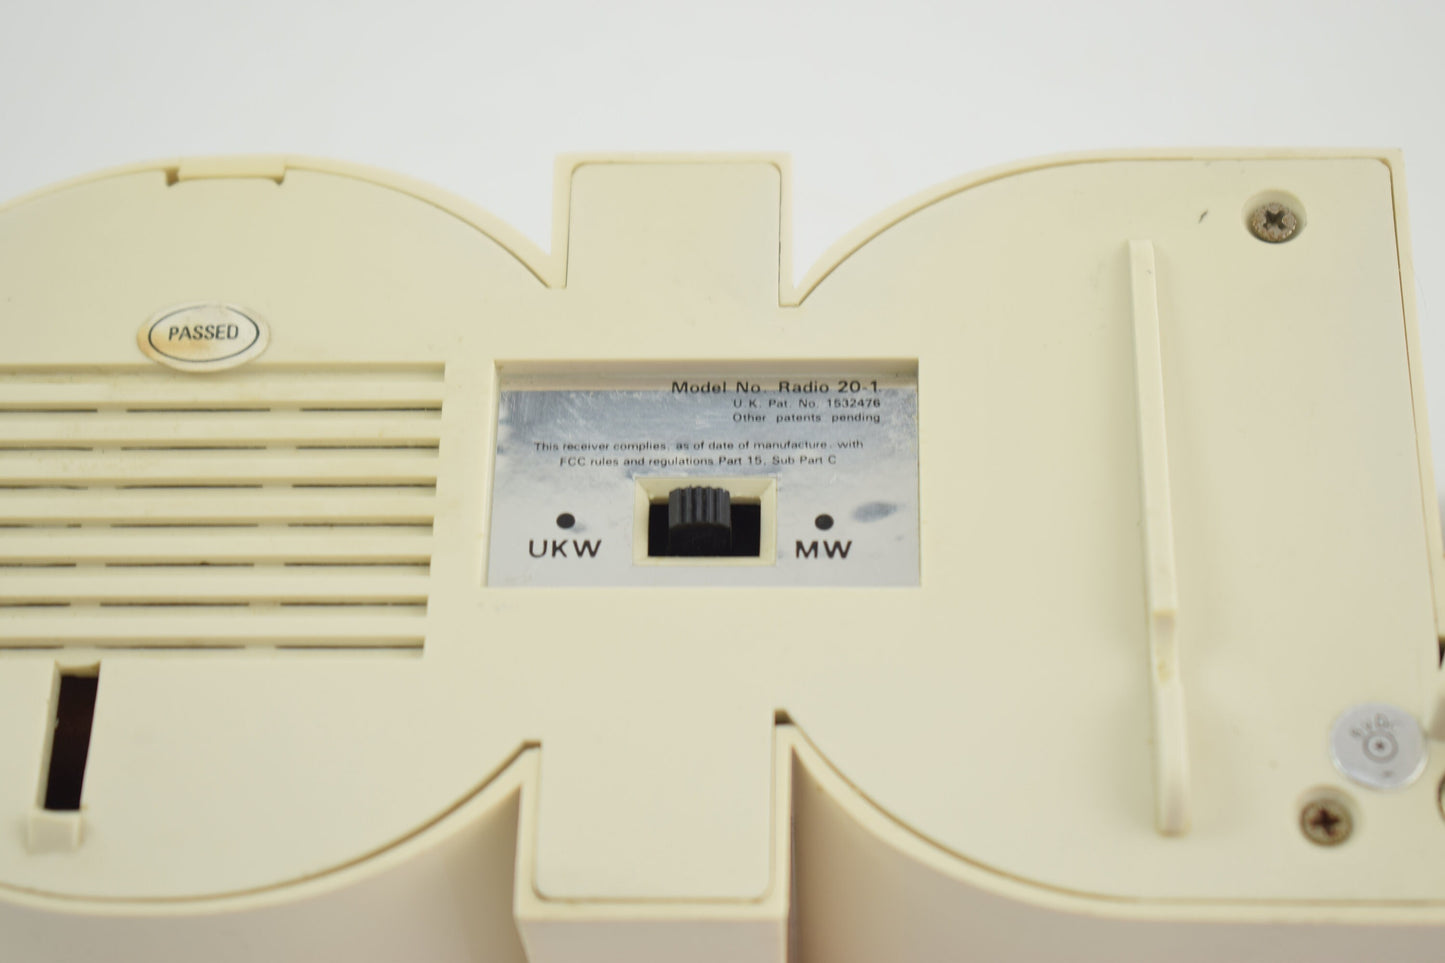 Modelo de radio radio en forma de palabra radio UKW y frecuencia MW